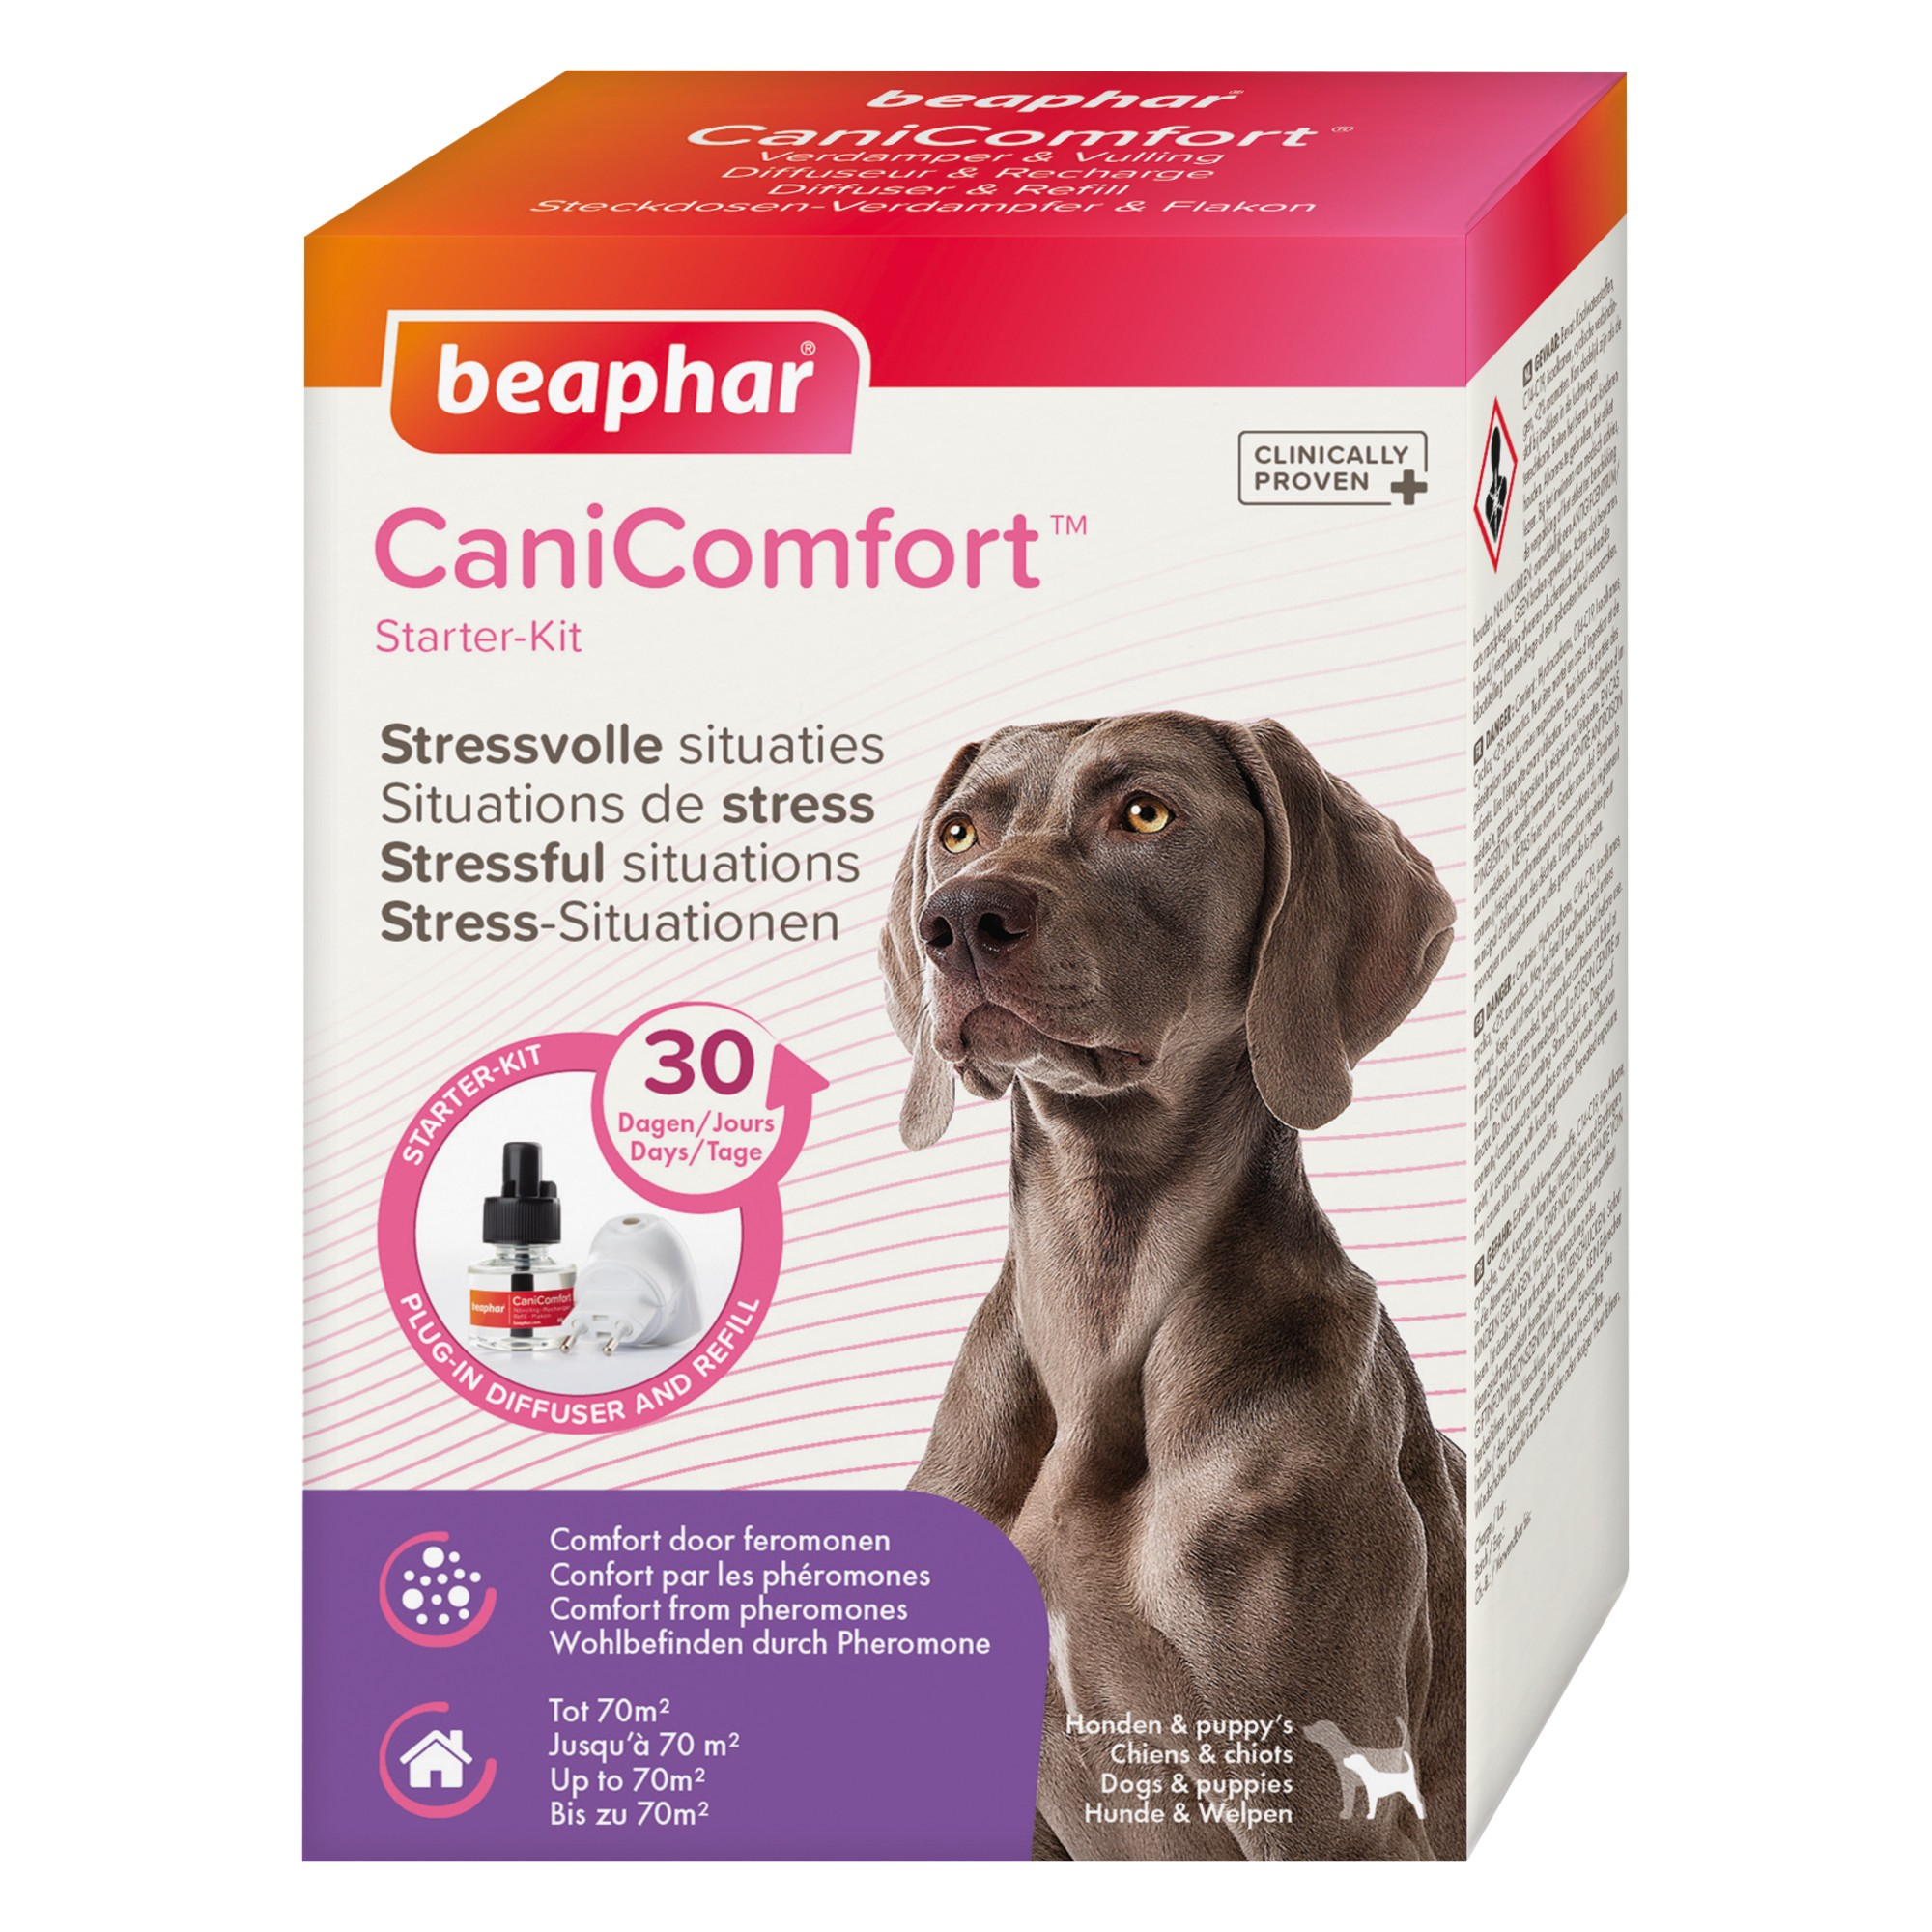 CaniComfort Difusor y recambio de feromonas para perros